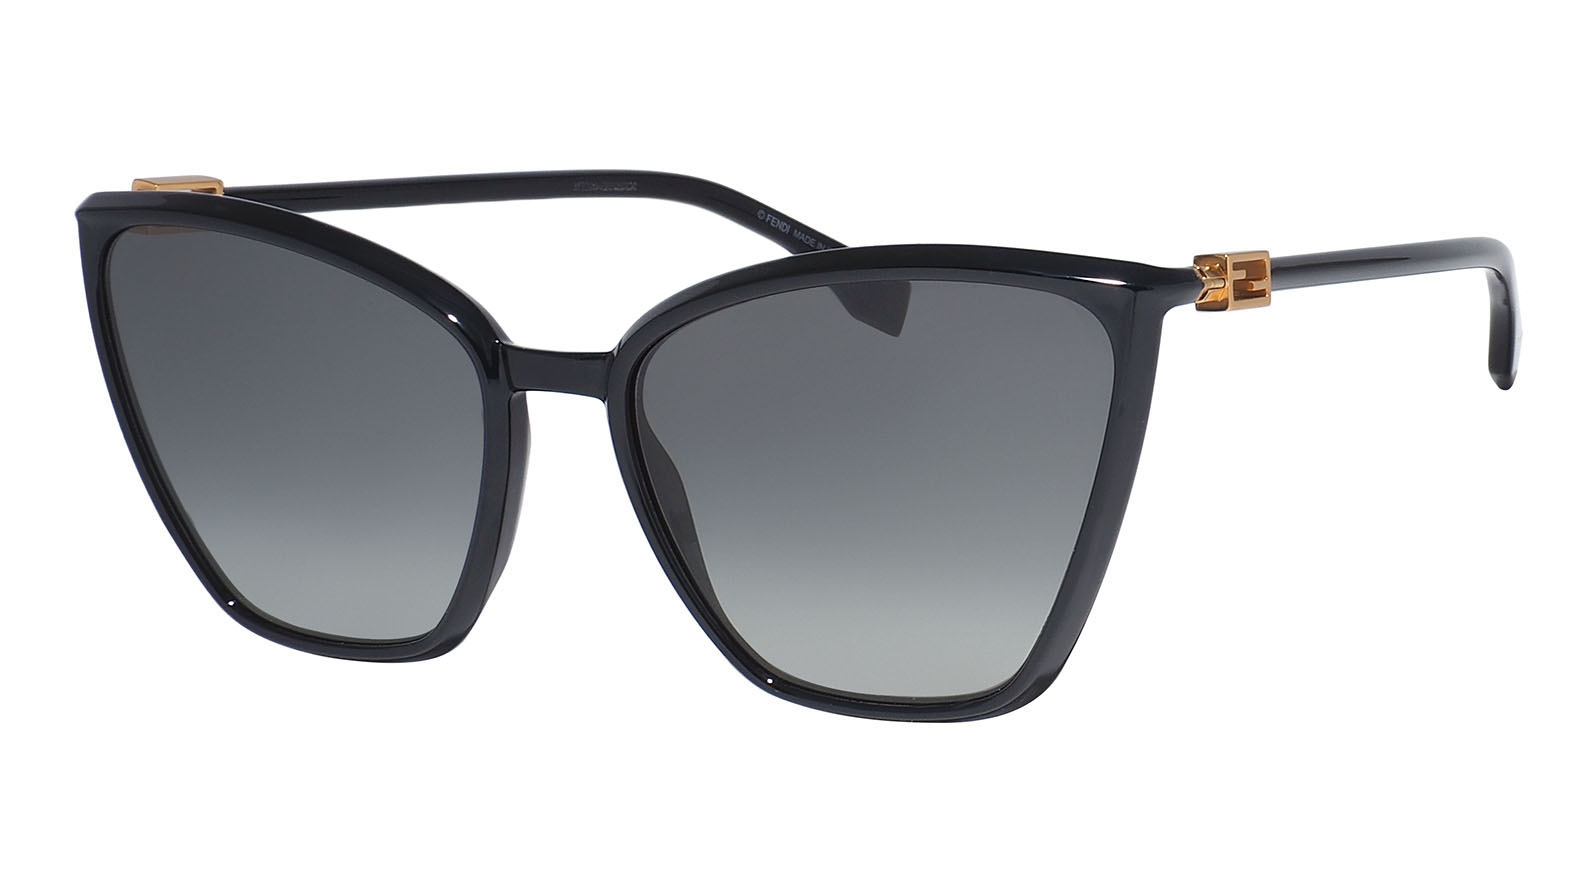 Fendi 433-G-S 807 классические квадратные мужчины поляризованные солнцезащитные очки спортивные поляризованные женские зеркала моды